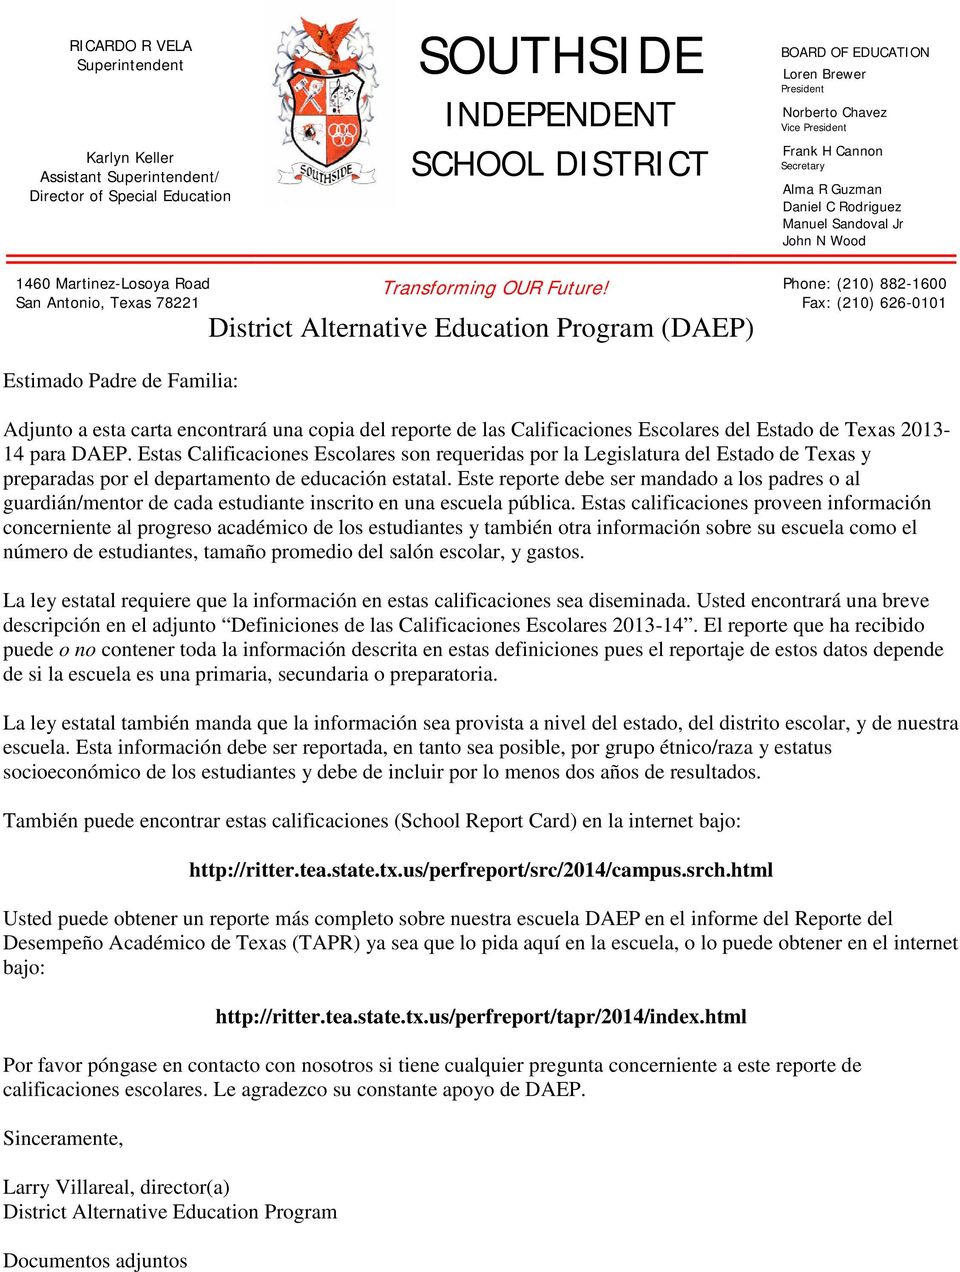 District Alternative Education Program (DAEP) Adjunto a esta carta encontrará una copia del reporte de las Calificaciones Escolares del Estado de Texas 2013-14 para DAEP.